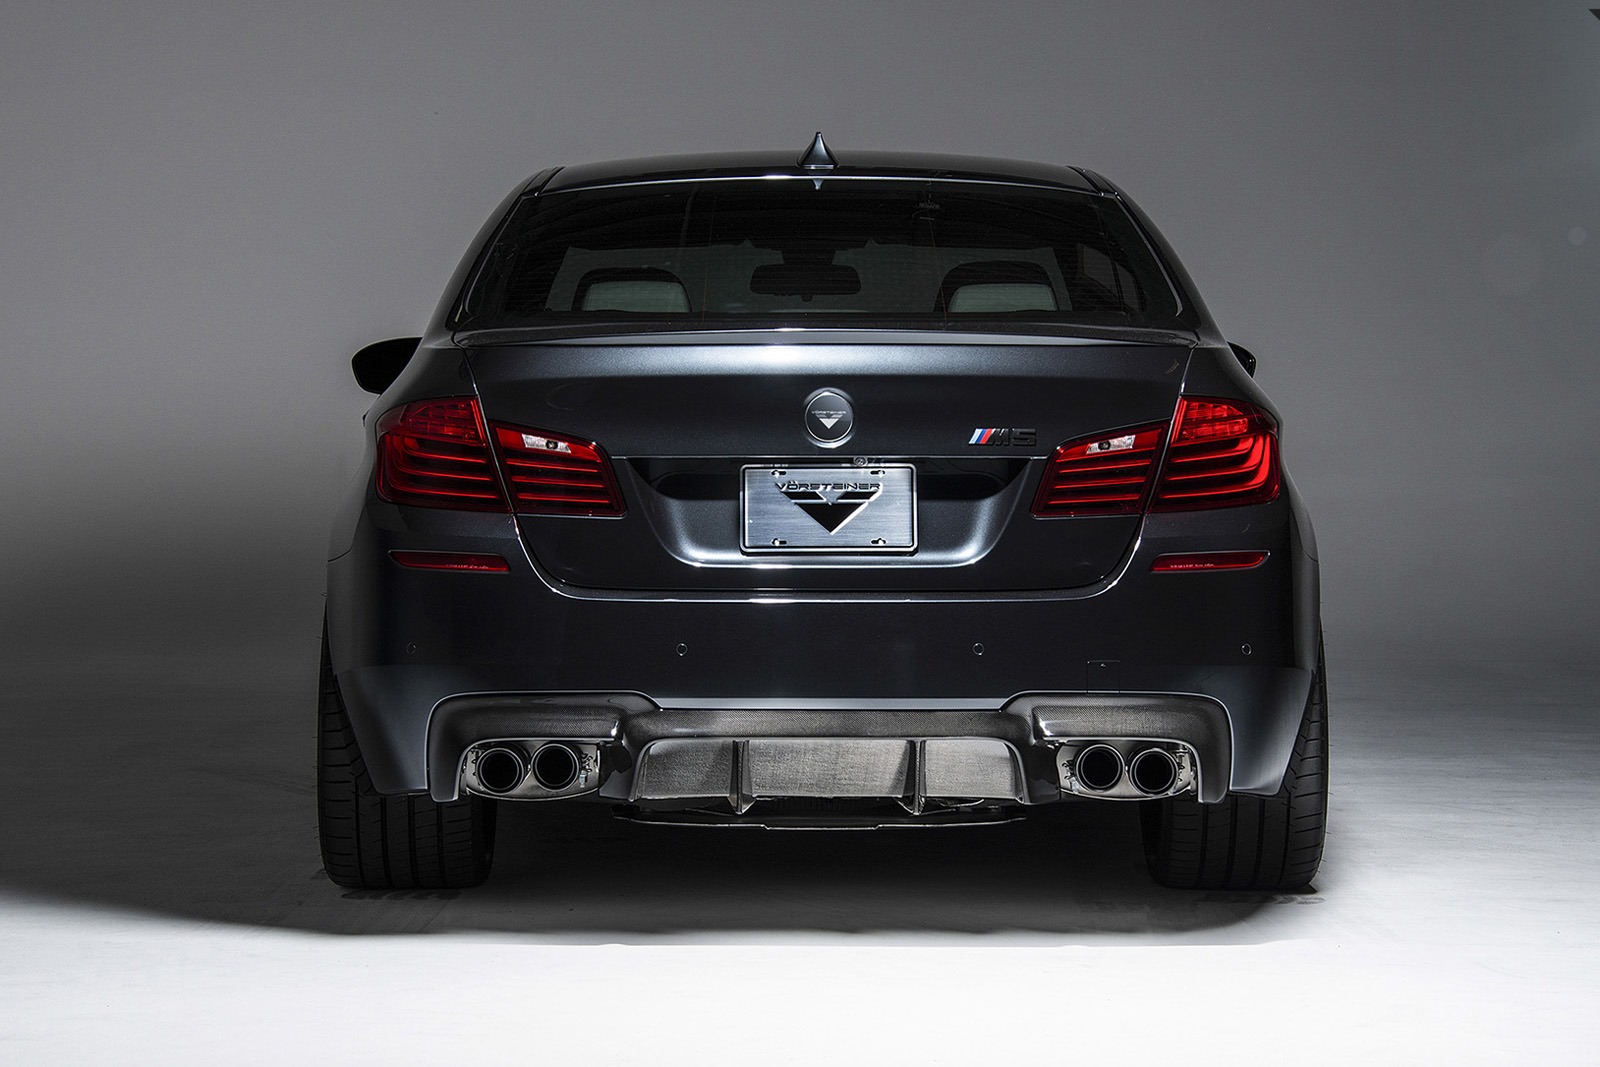 2014-BMW-M5-by-Vorsteiner-rear.jpg